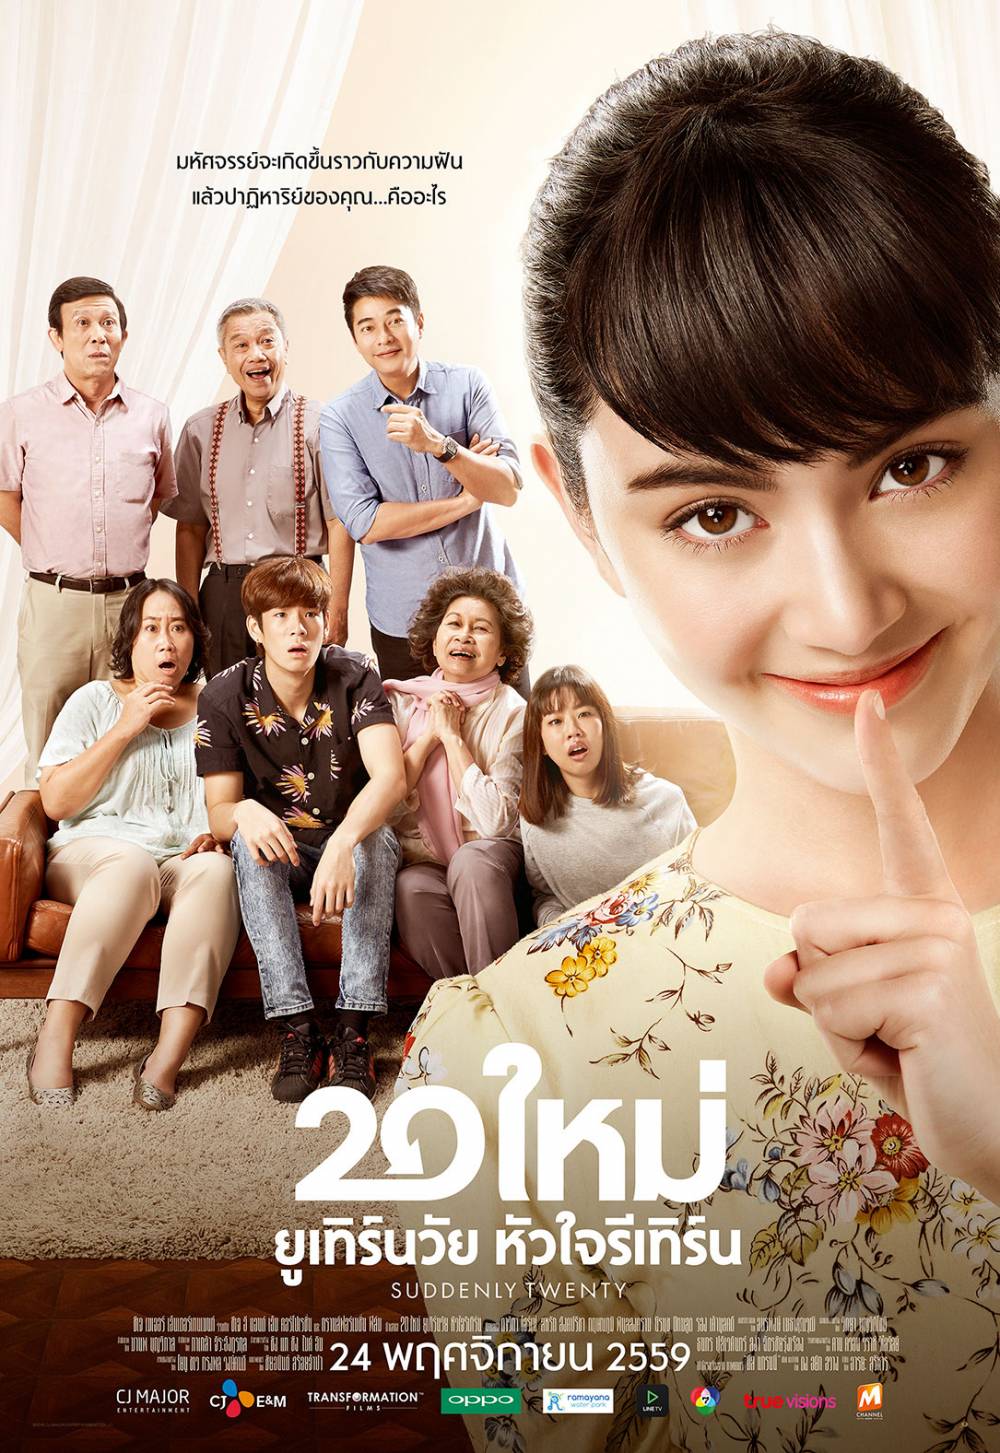 Phim hài Thái Lan hay nhất: Bỗng dưng 20